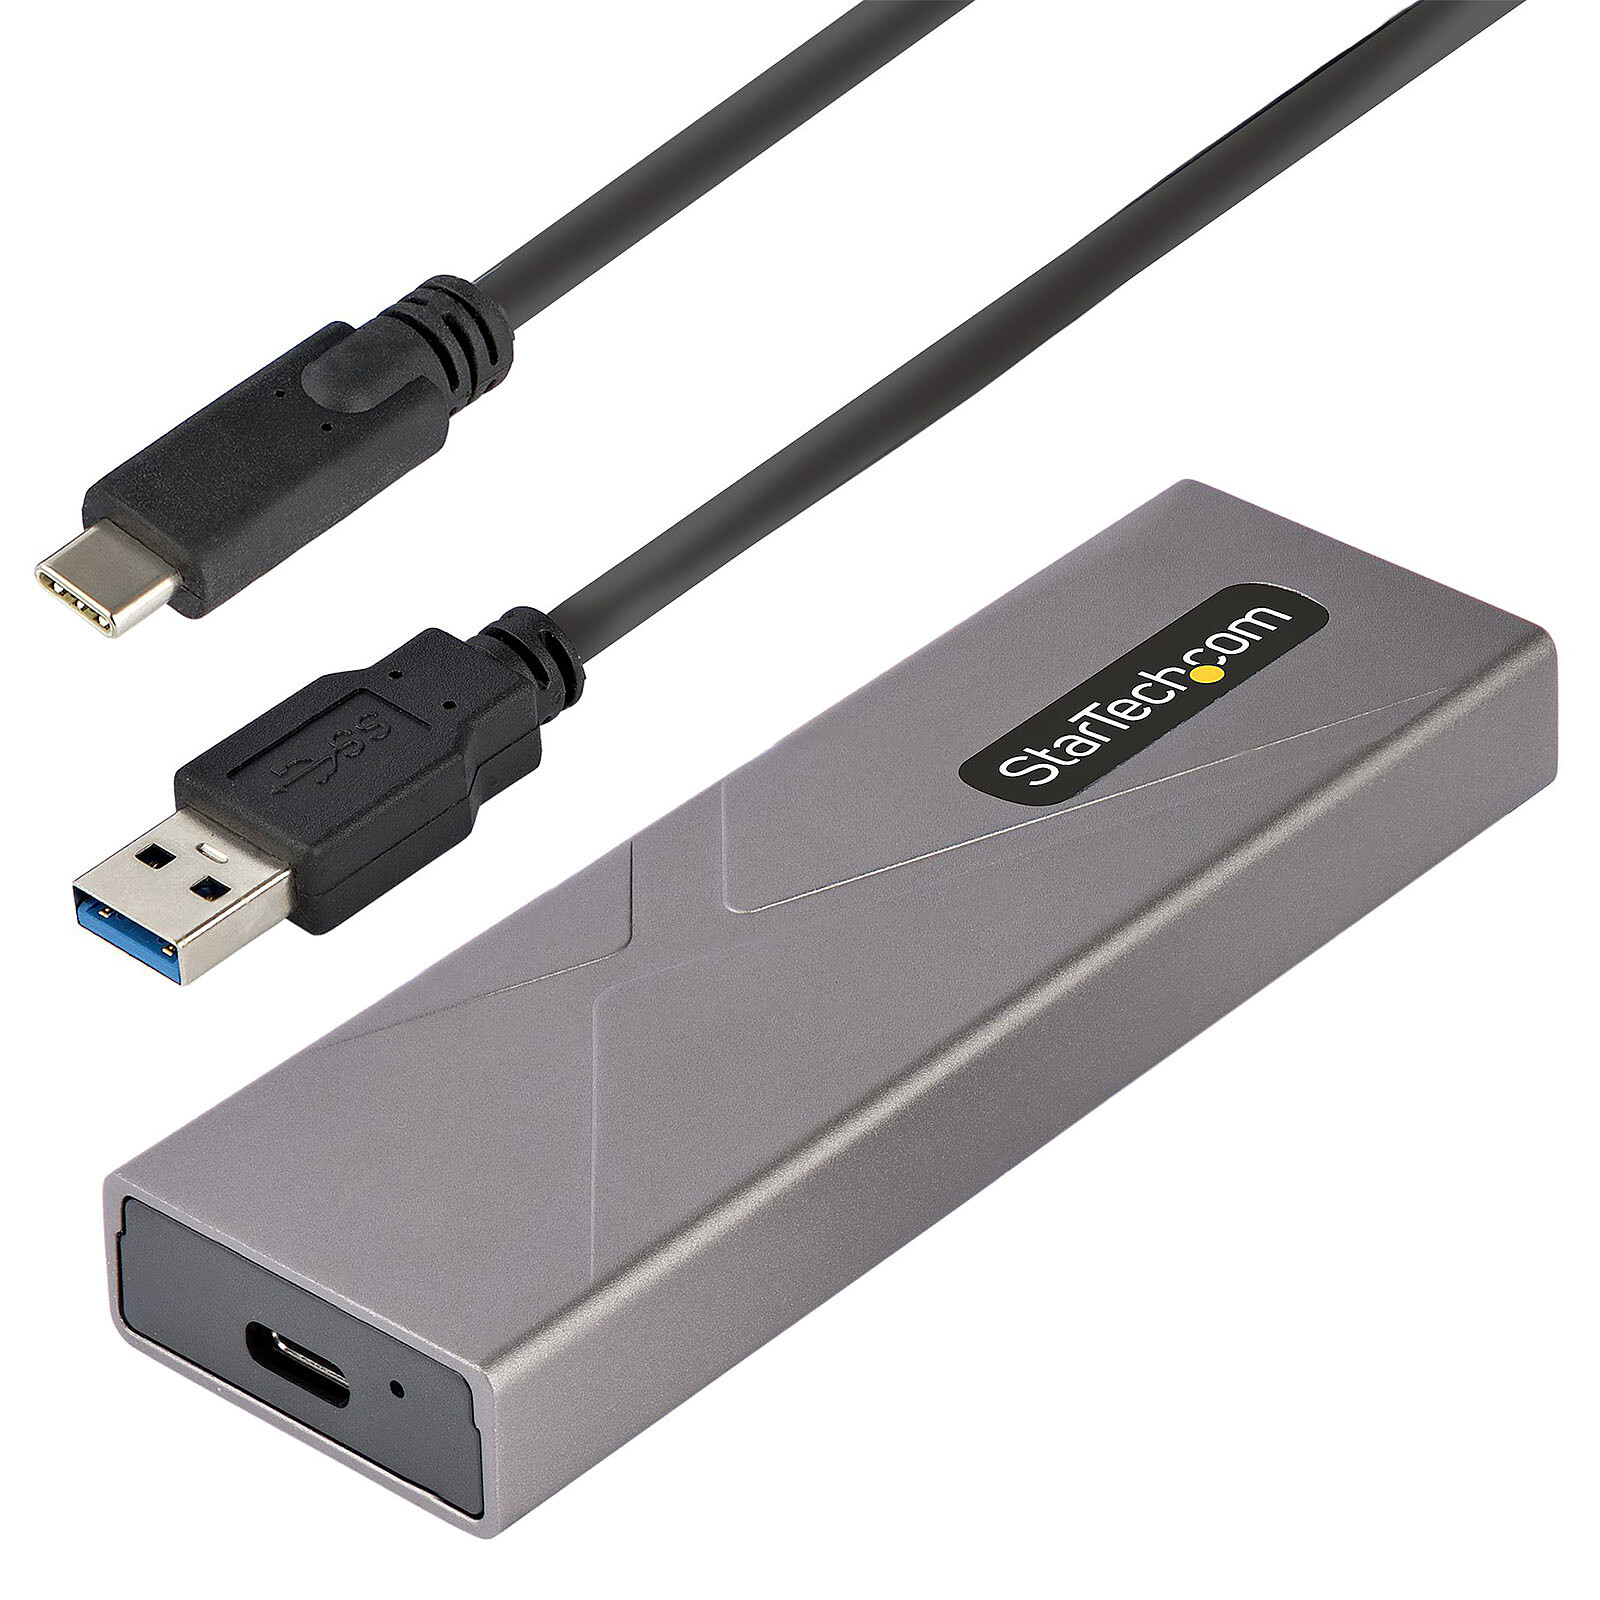 Boitier aluminium USB pour disque HDD SATA 2.5 3.5 et SSD M2 NVMe